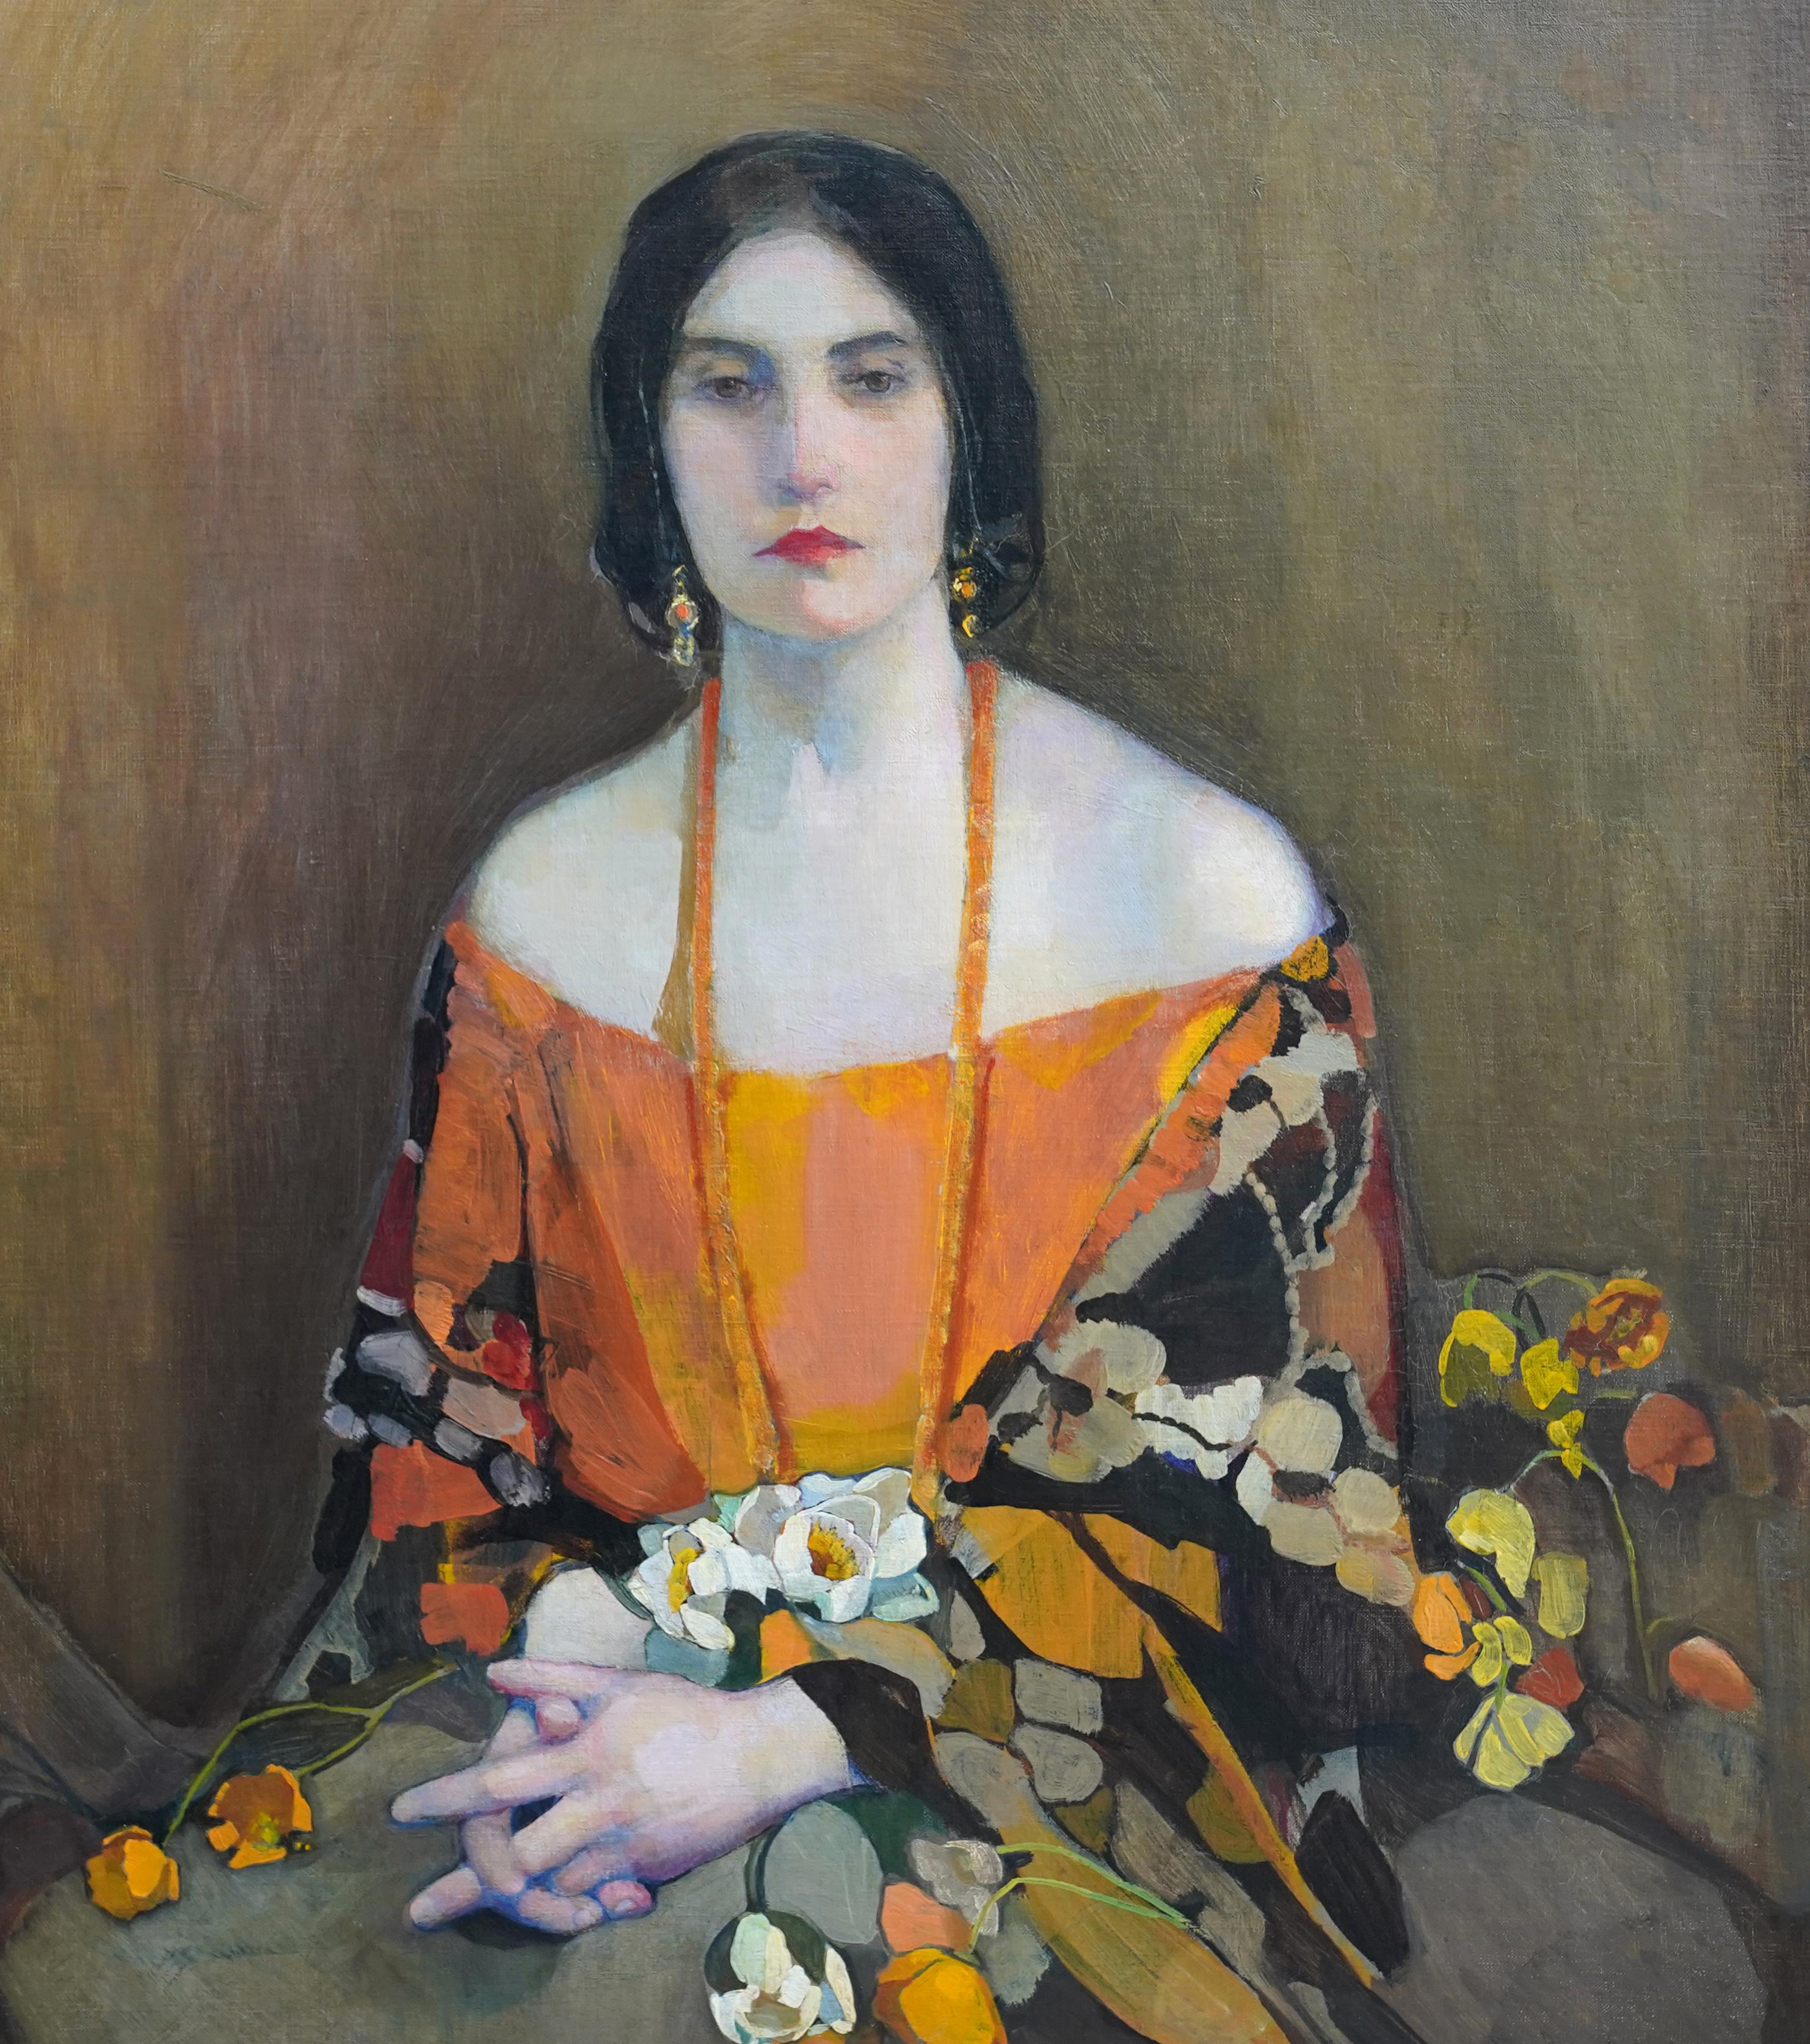 Exotique - peinture à l'huile écossaise des années 1920 exposée 'Glasgow Girl' portrait d'art - Art déco Painting par Norah Neilson Gray